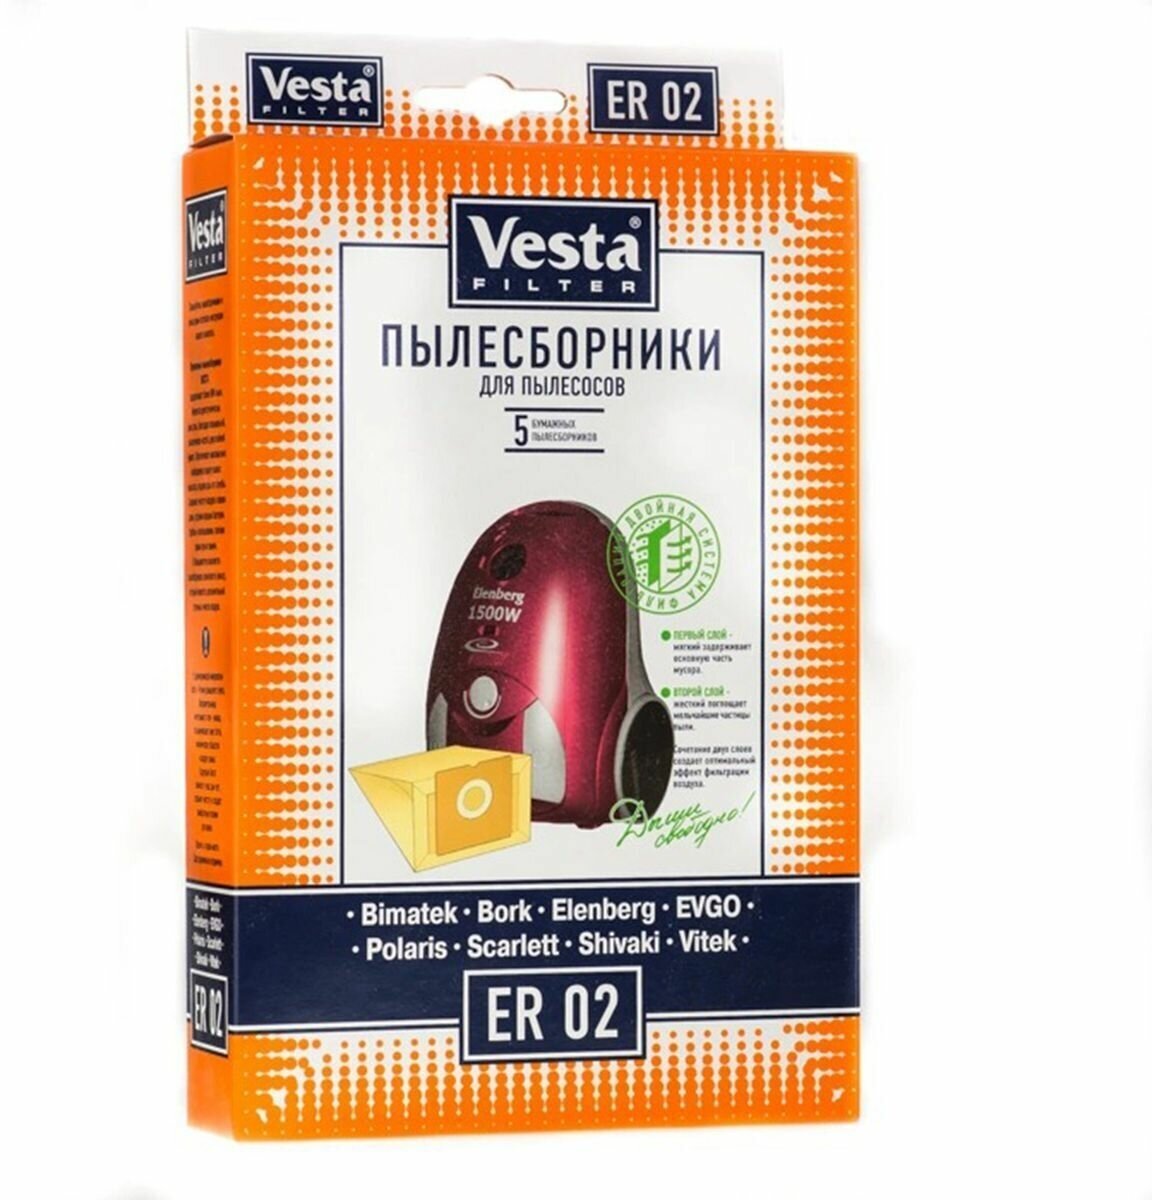 Vesta filter Бумажные пылесборники ER 02, разноцветный, 5 шт. - фото №4